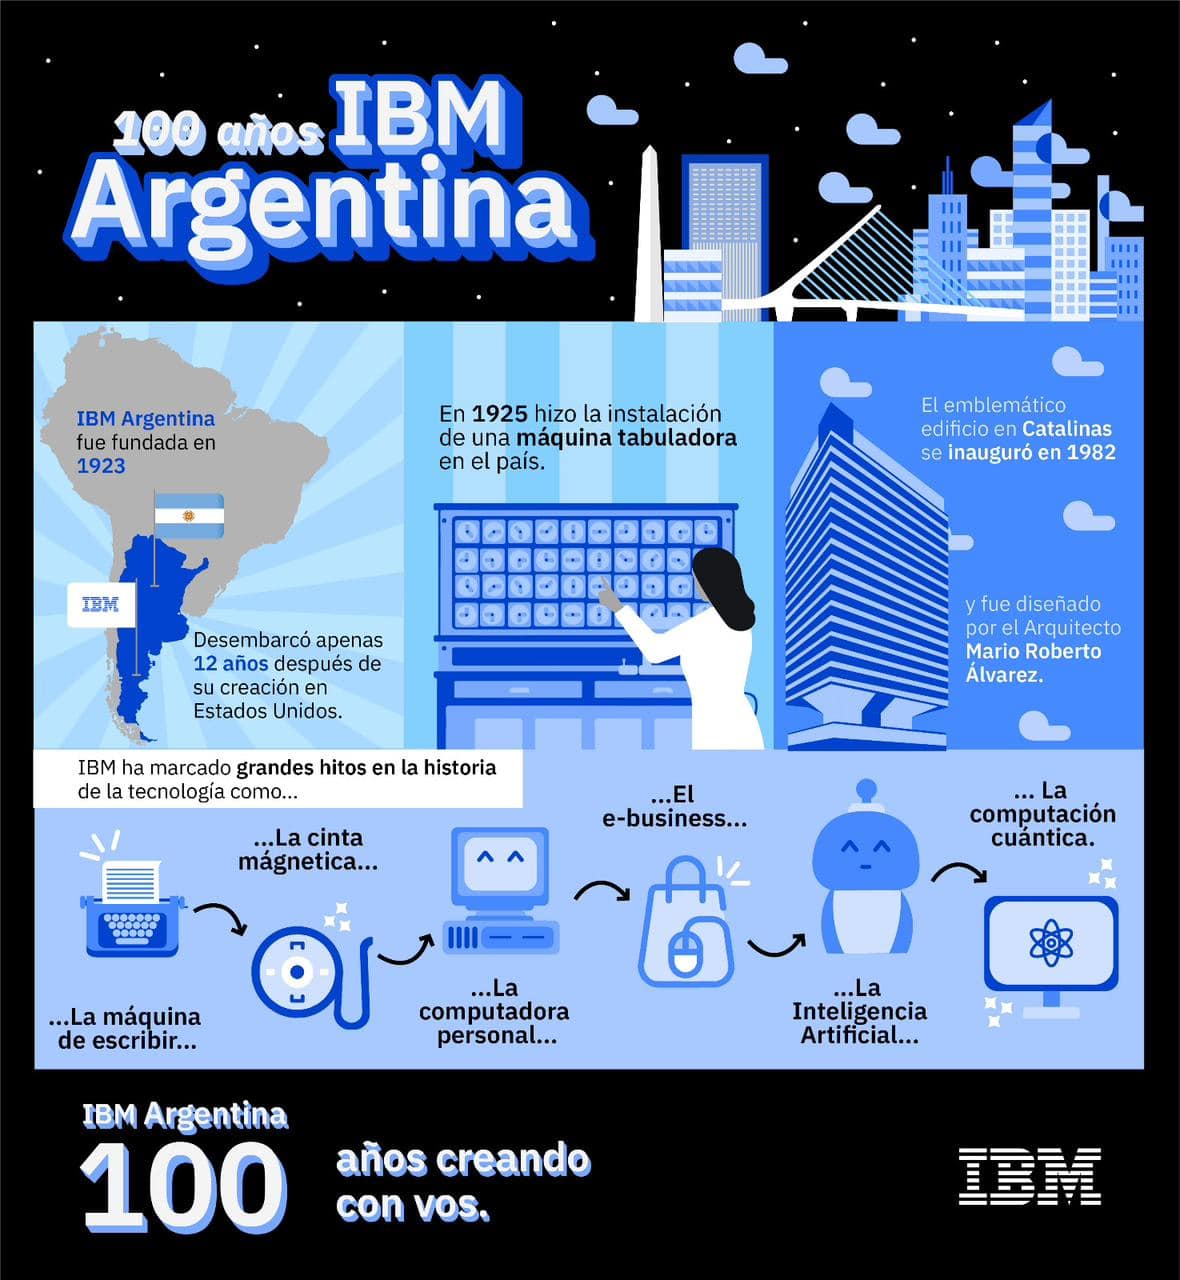 100 años de IBM Argentina: 5 apuestas de las empresas argentinas en el inicio de una nueva era tecnológica